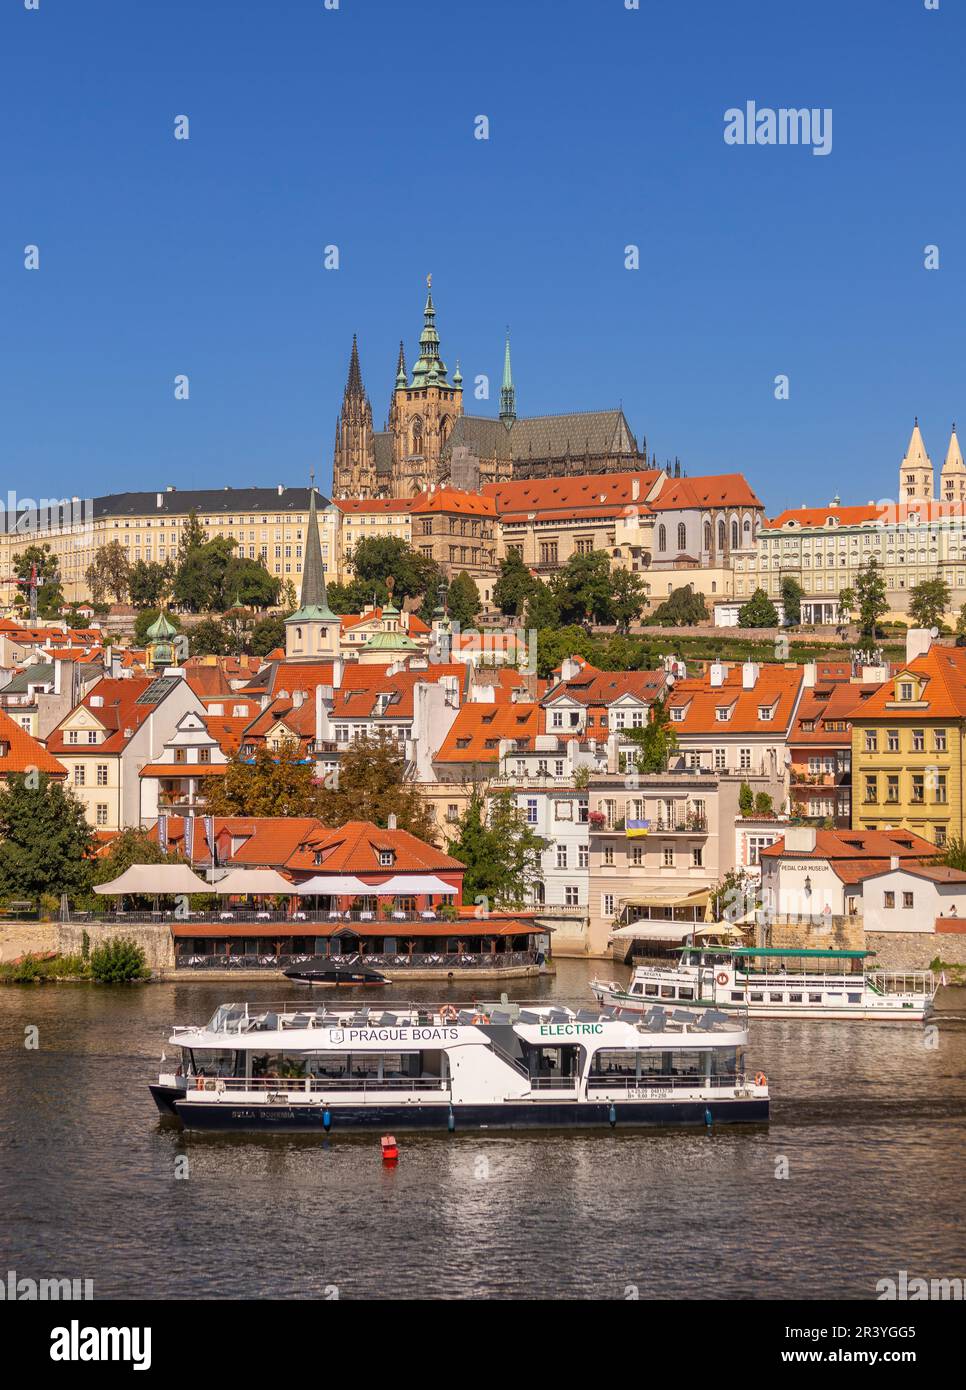 PRAG, TSCHECHISCHE REPUBLIK, EUROPA - Prager Skyline mit Prager Burg und St. Veitsdom und Burgviertel, Hradcany, auf der Moldau. Elektrischer bo Stockfoto